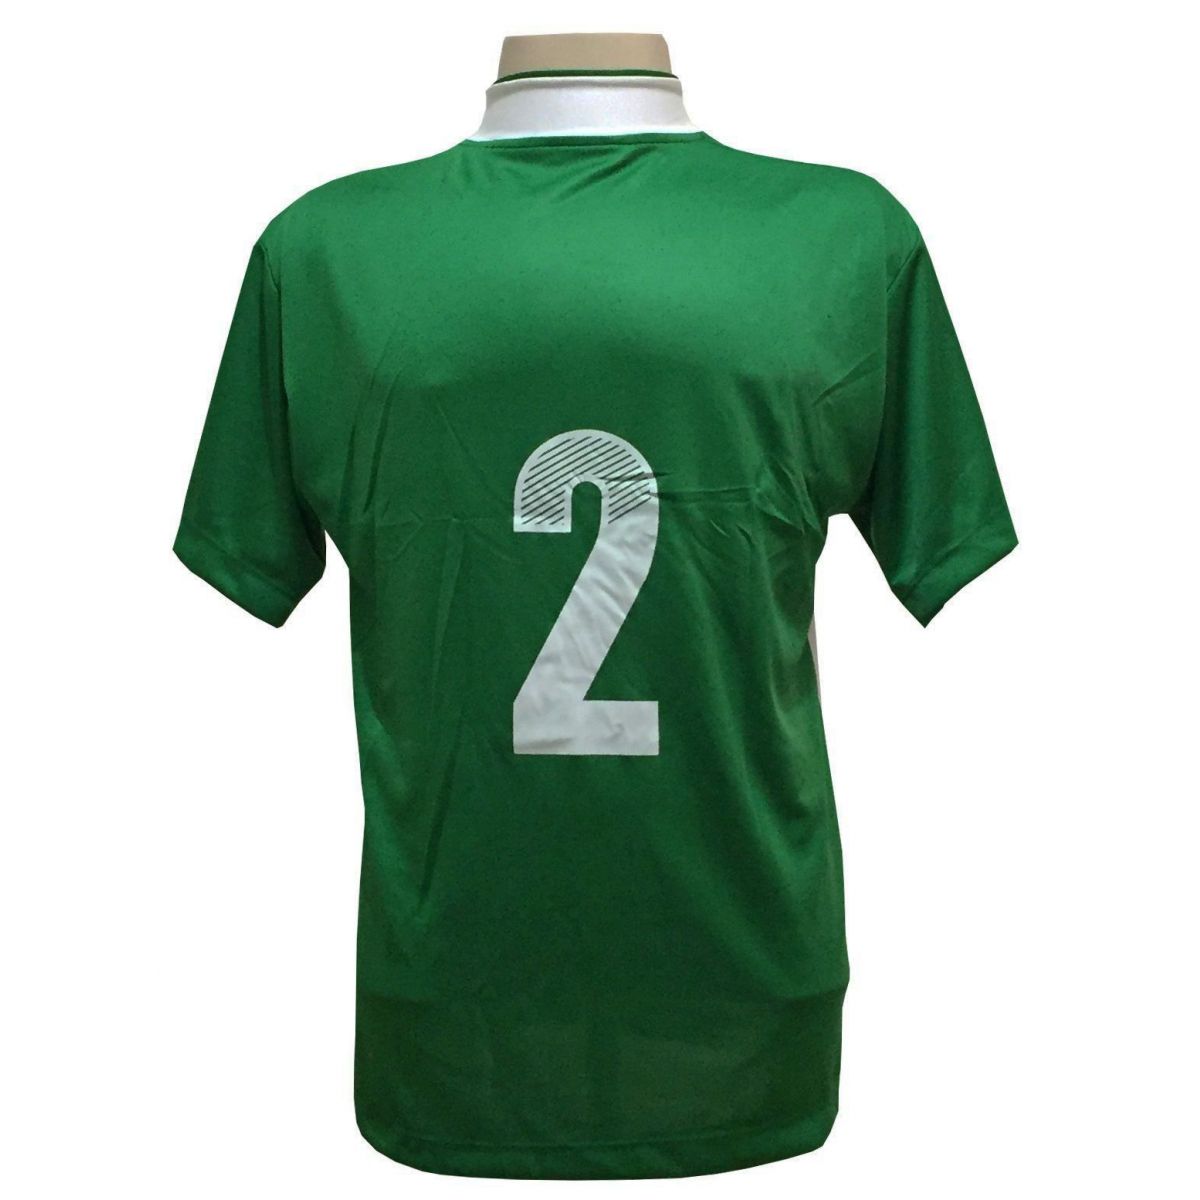 Uniforme Esportivo com 14 camisas modelo Suécia Verde/Branco + 14 calções modelo Copa + 1 Goleiro + Brindes